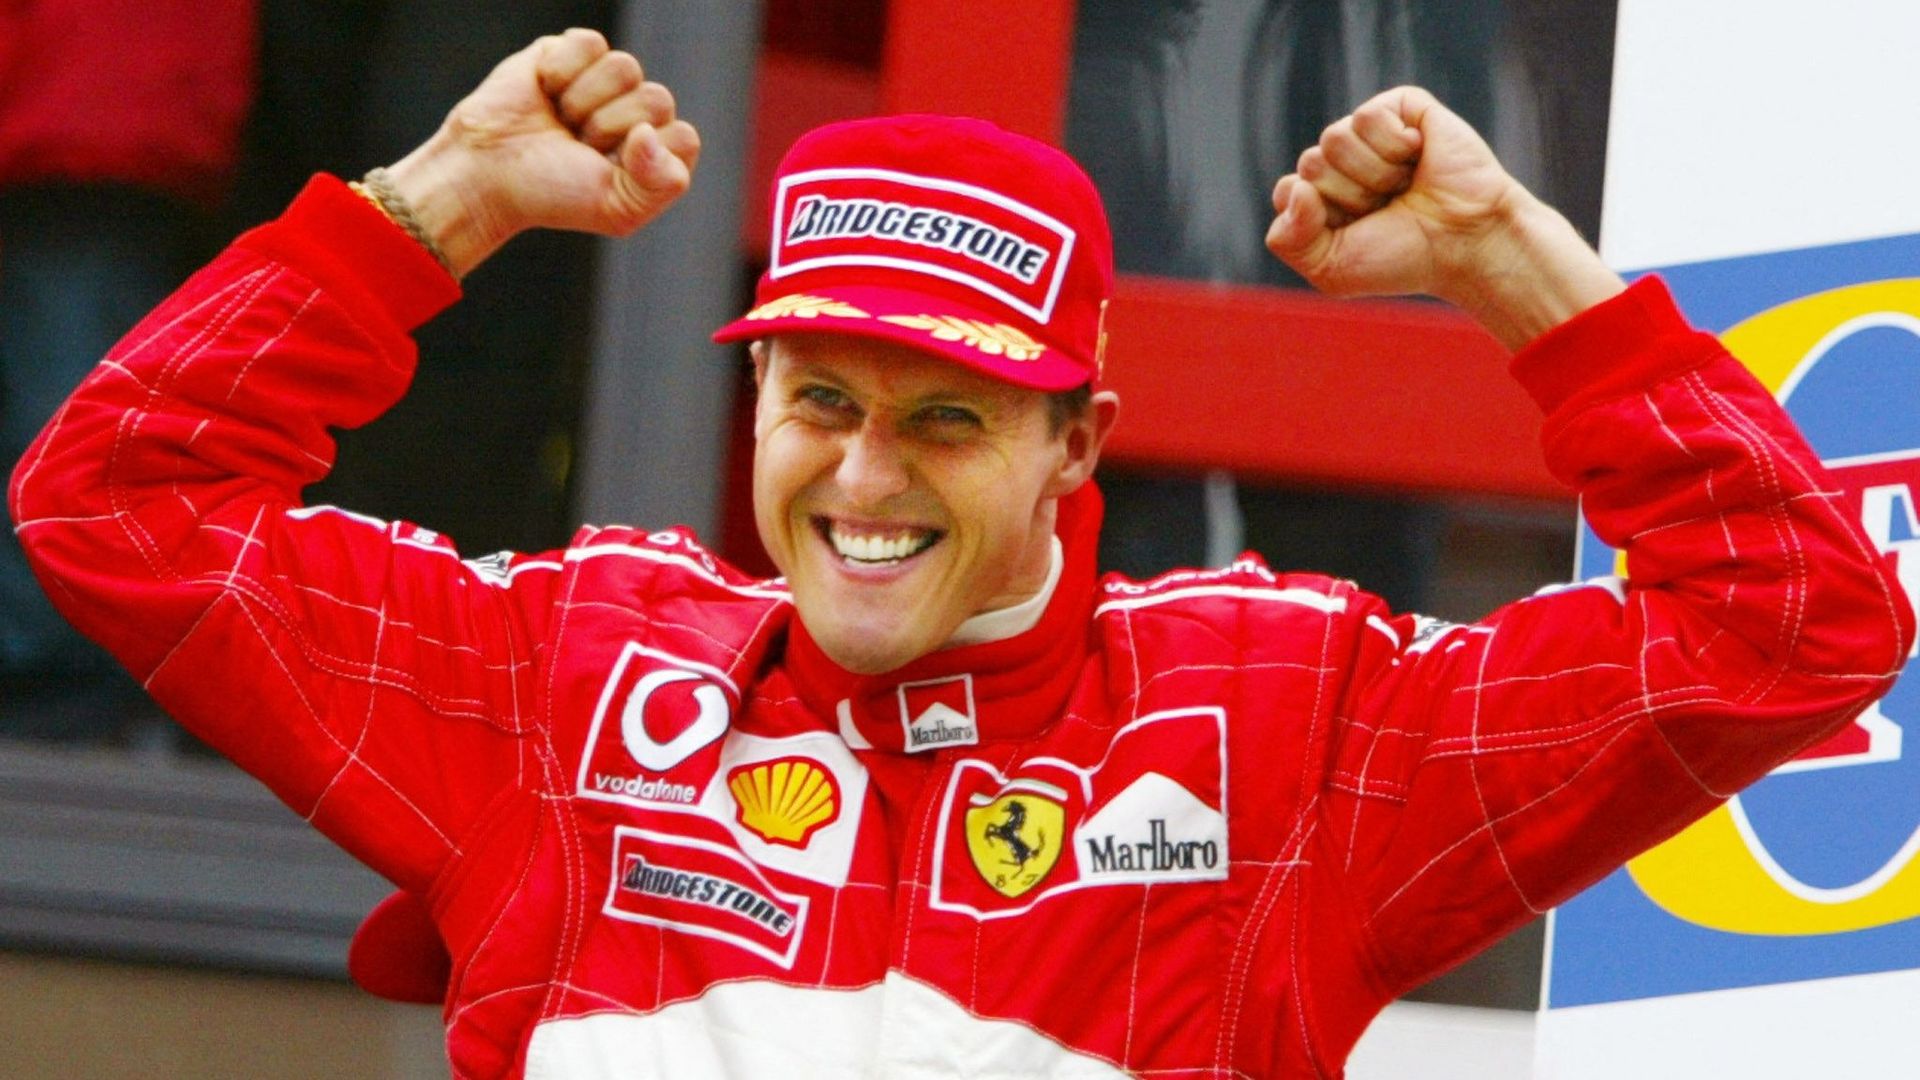 Michael Schumacher sur la plus haute marche du podium le 1er septembre 2002 à Spa, lors de sa dernière victoire sur le Grand Prix de Belgique.